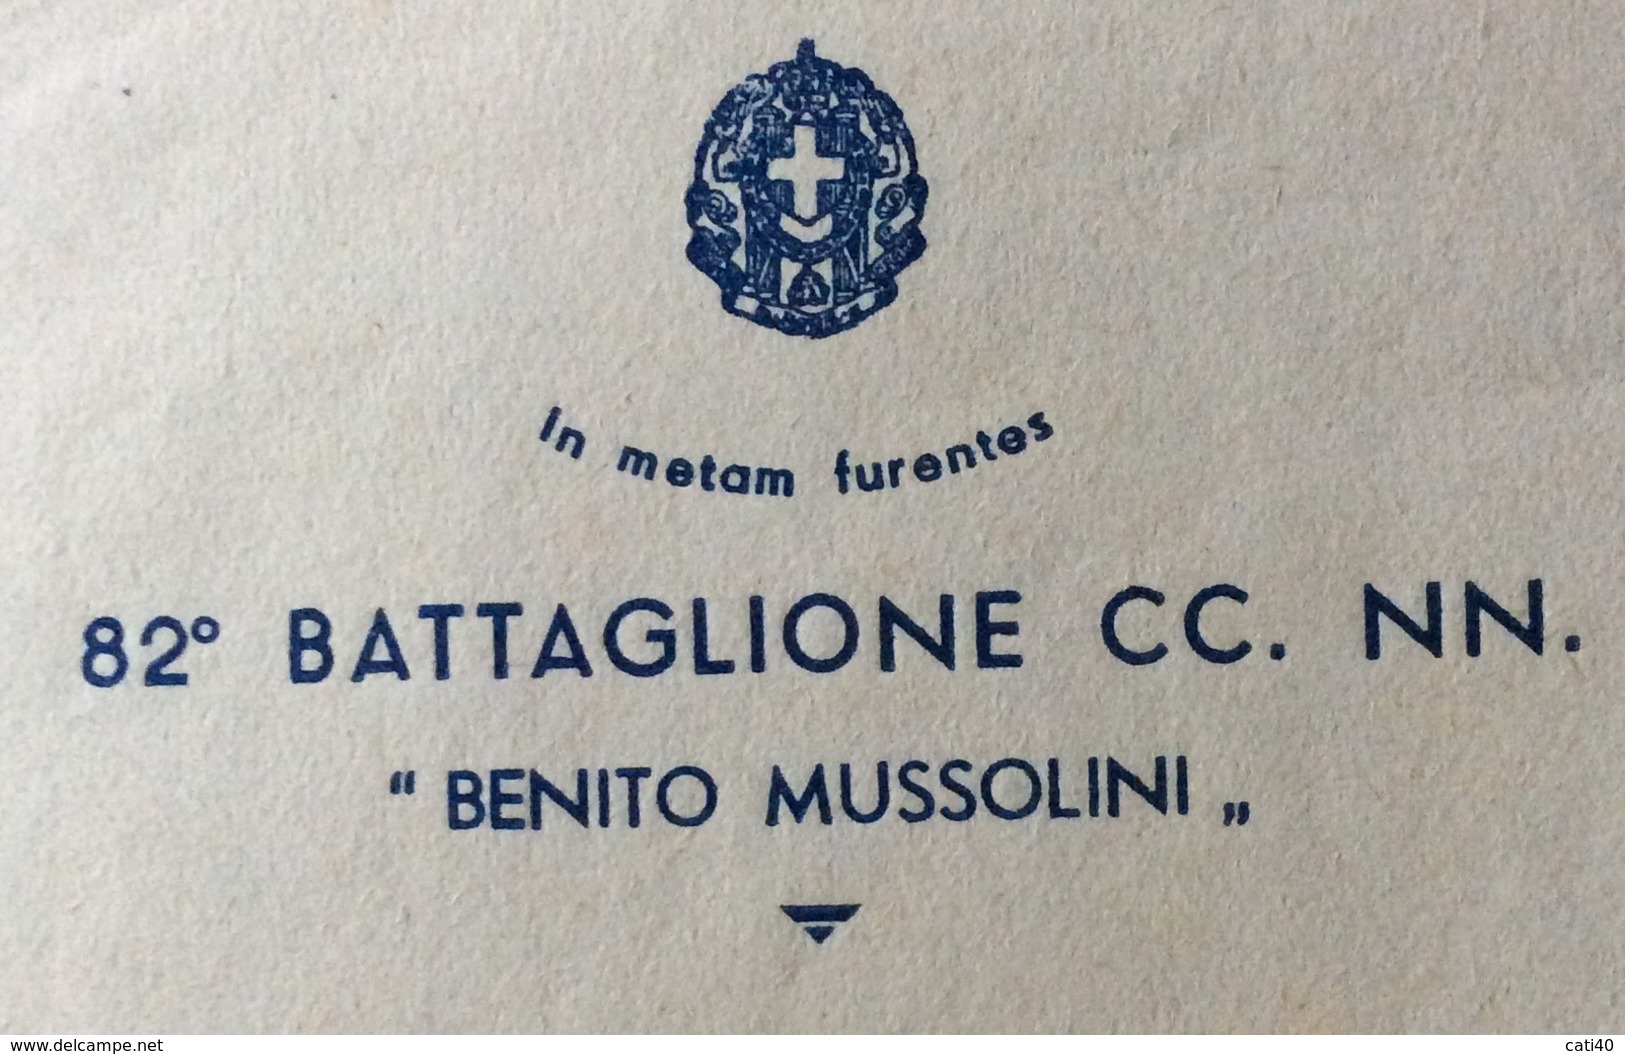 FASCISMO  "in Metas Furente" 82 BATTAGLIONE CC.NN. " BENITO MUSSOLINI " BUSTA E LETTERA INTESTATE POTENZA 4/6/35 - Documenti Storici